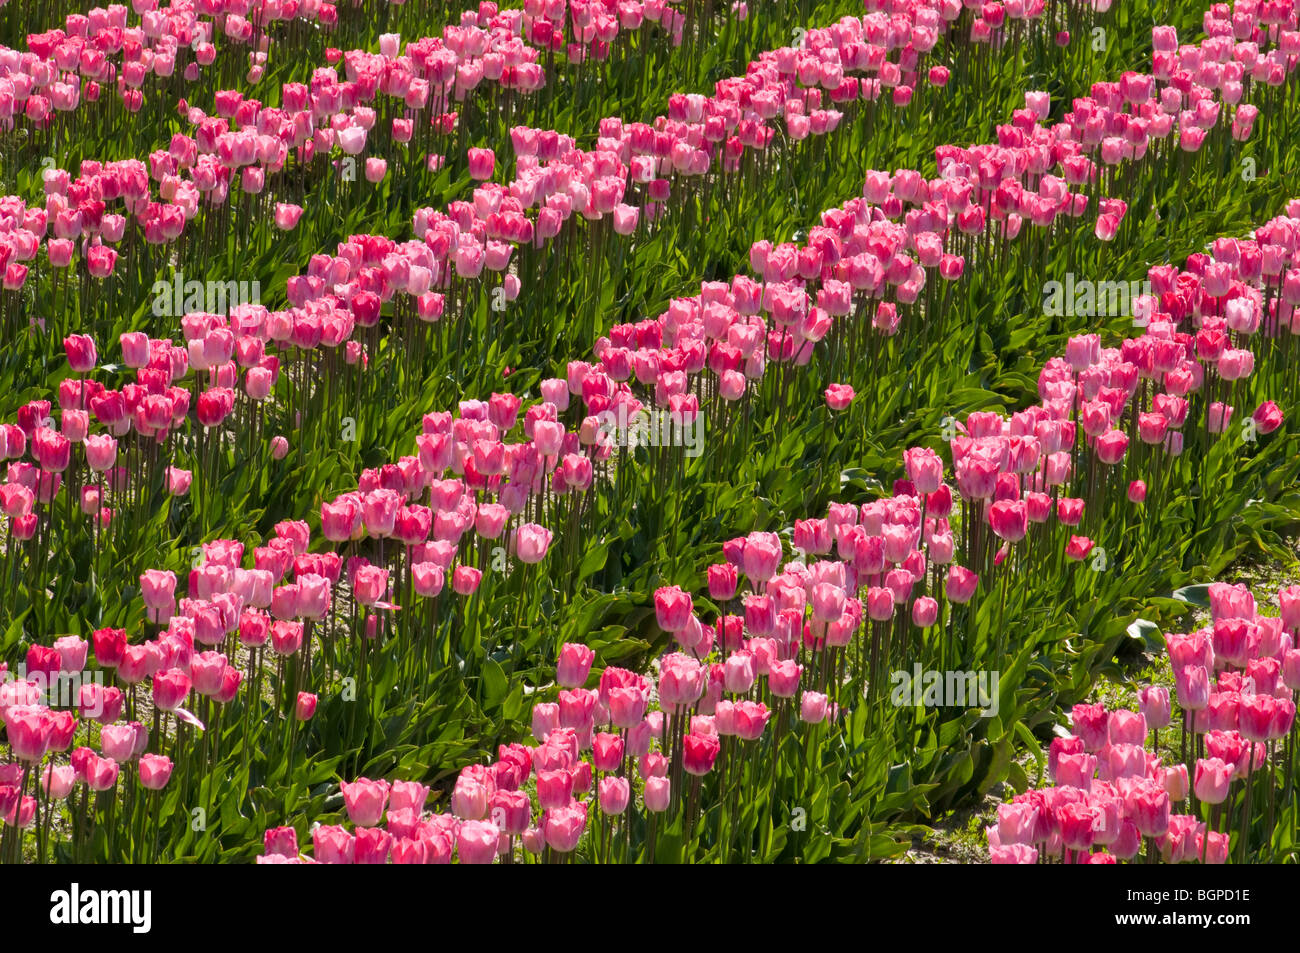 Tulips at Roozengaarde tulip fields, Skagit Valley, Washington. Stock Photo